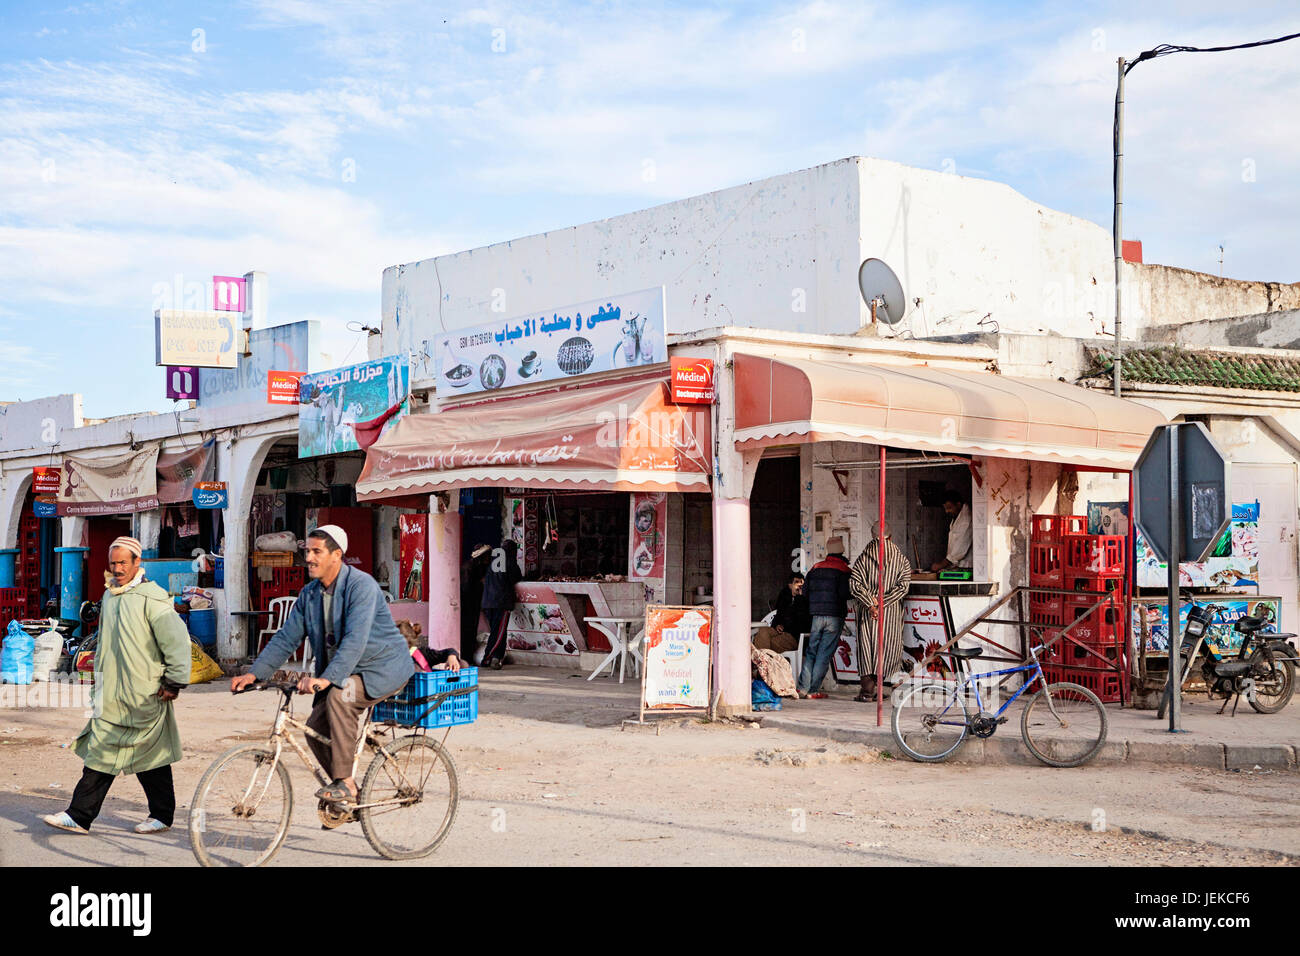 Las pequeñas ciudades de Marruecos. Calles de tiendas y de la vida cotidiana. Foto de stock